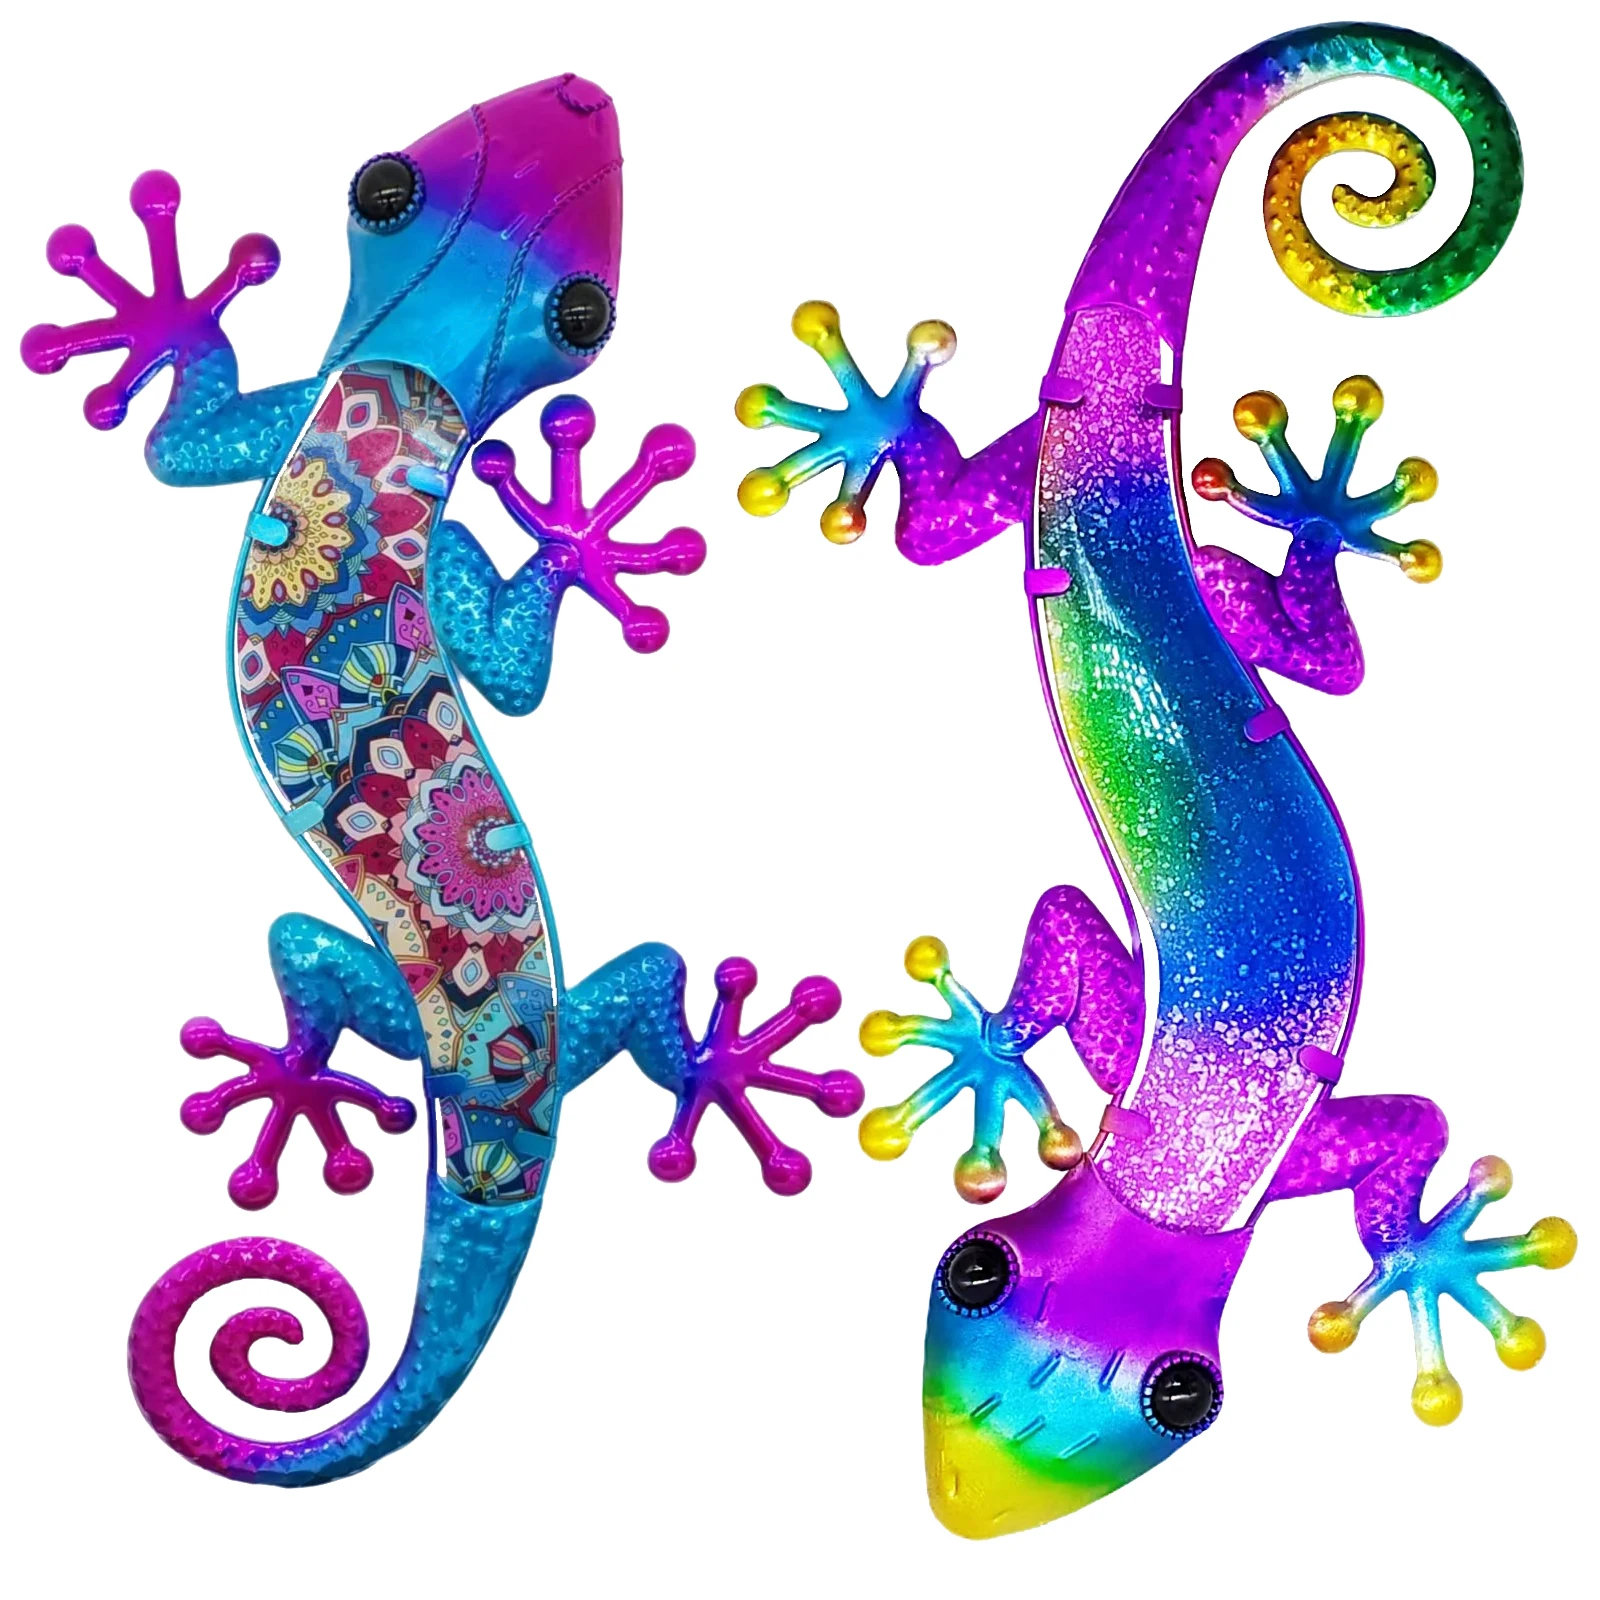 2pcs Metal Gecko Lizard Wall Art for Home Garden Decor Figurine Statues Sculptures Miniatures Animals Ornaments Outdoor Backyard